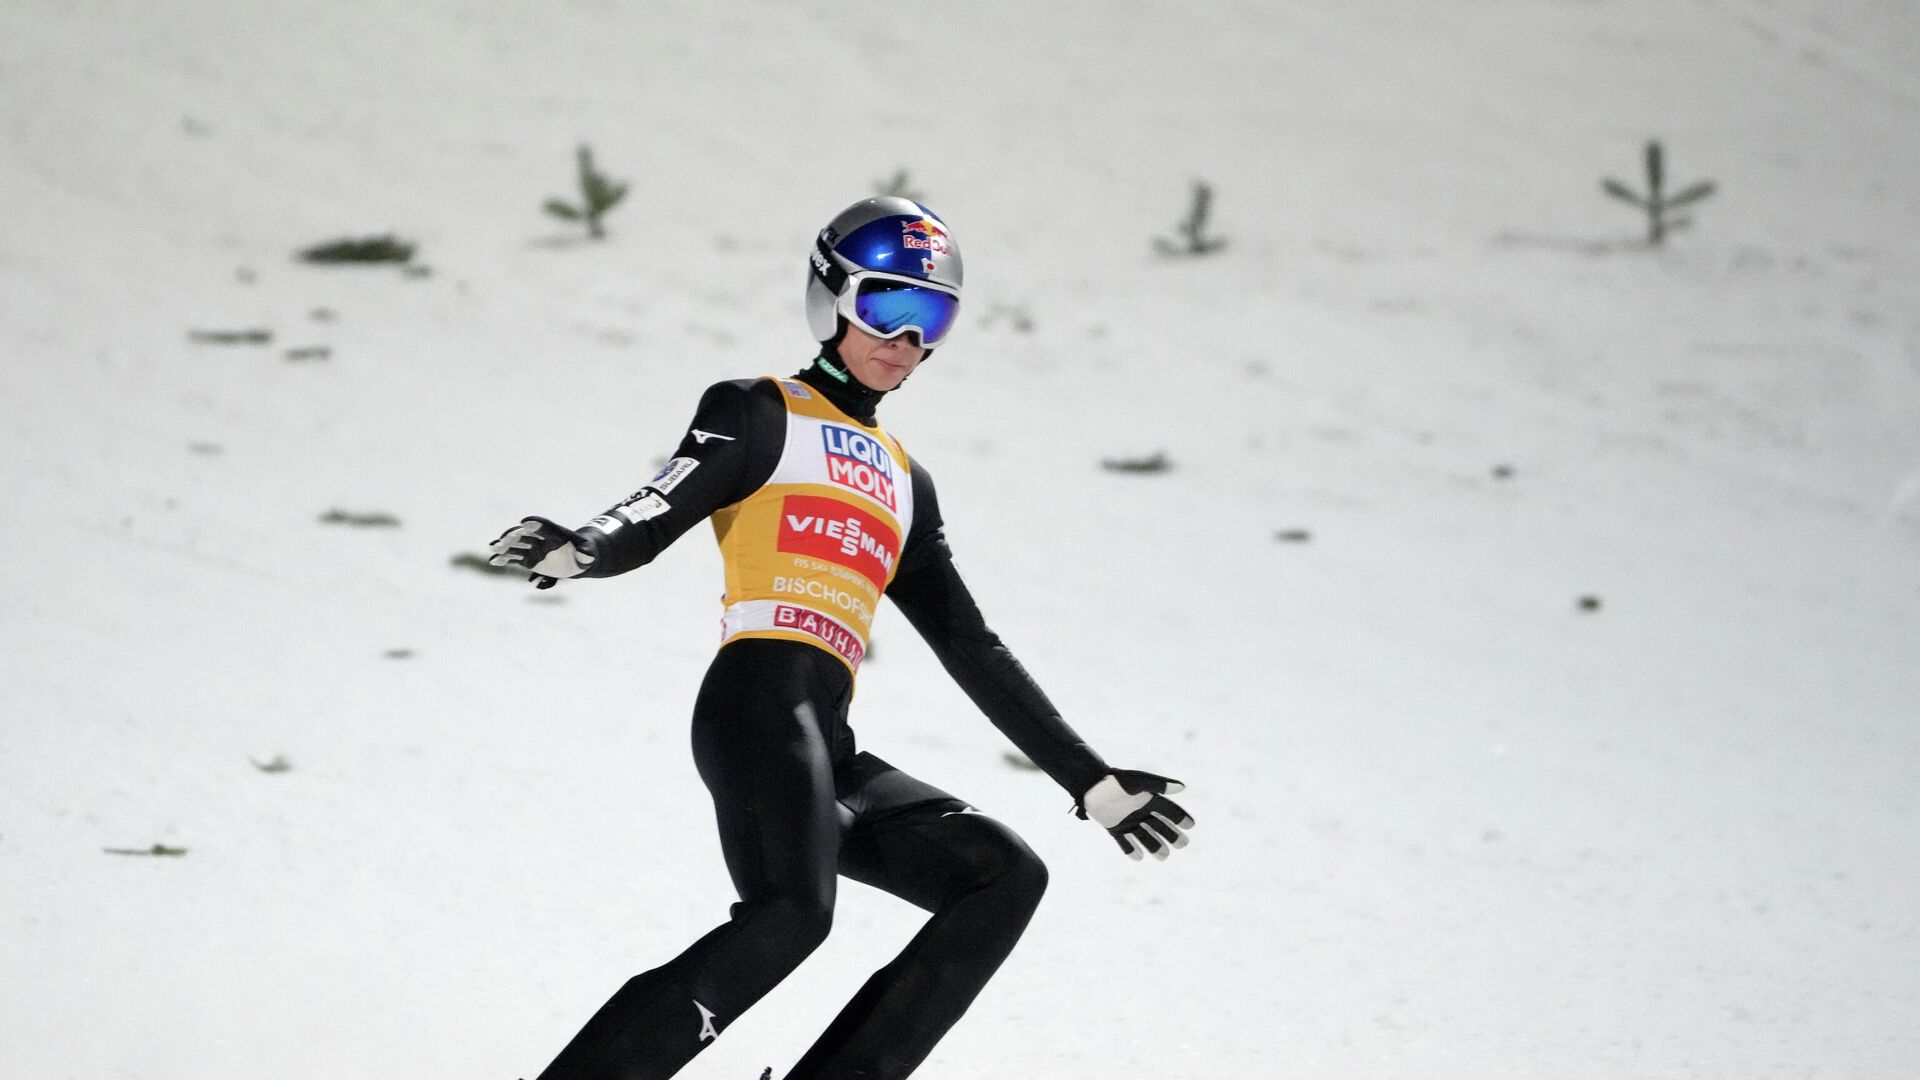 Јапански ски скакач Рјоју Кобајаши, победник Четири скакаонице за 2022. - Sputnik Србија, 1920, 06.01.2022